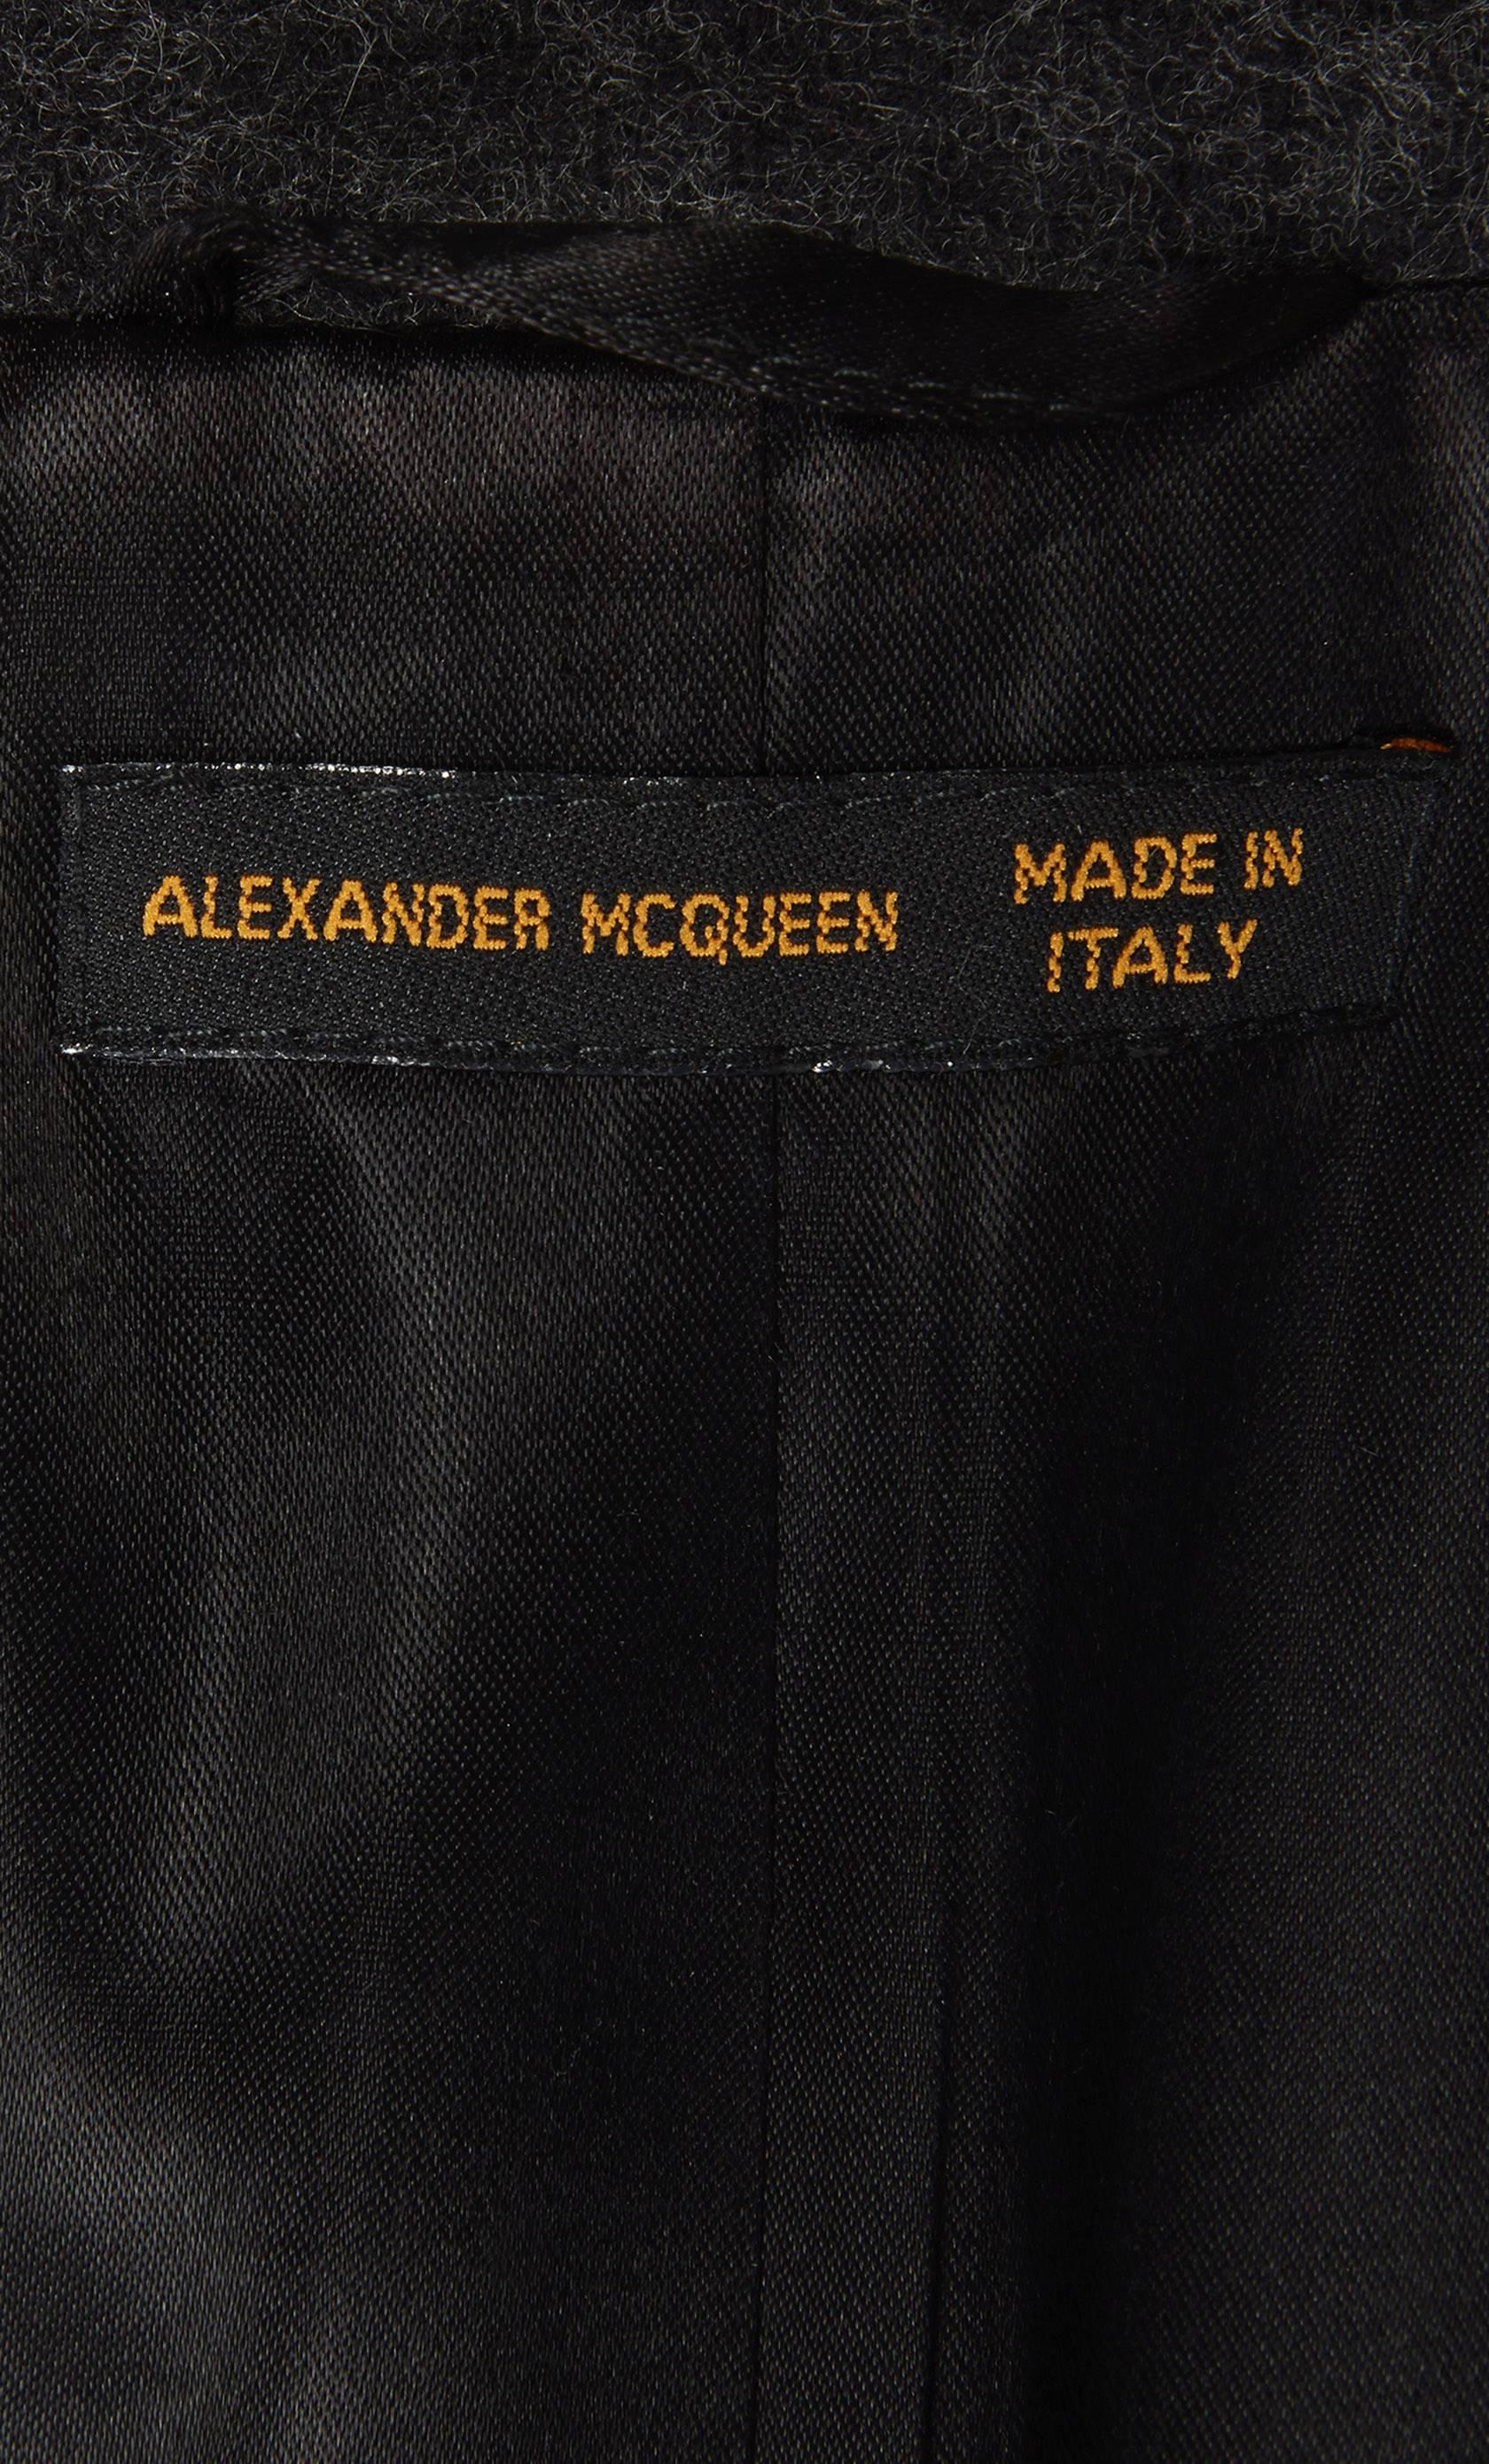 Alexander McQueen grey & black coat, Autumn/Winter 1999 1